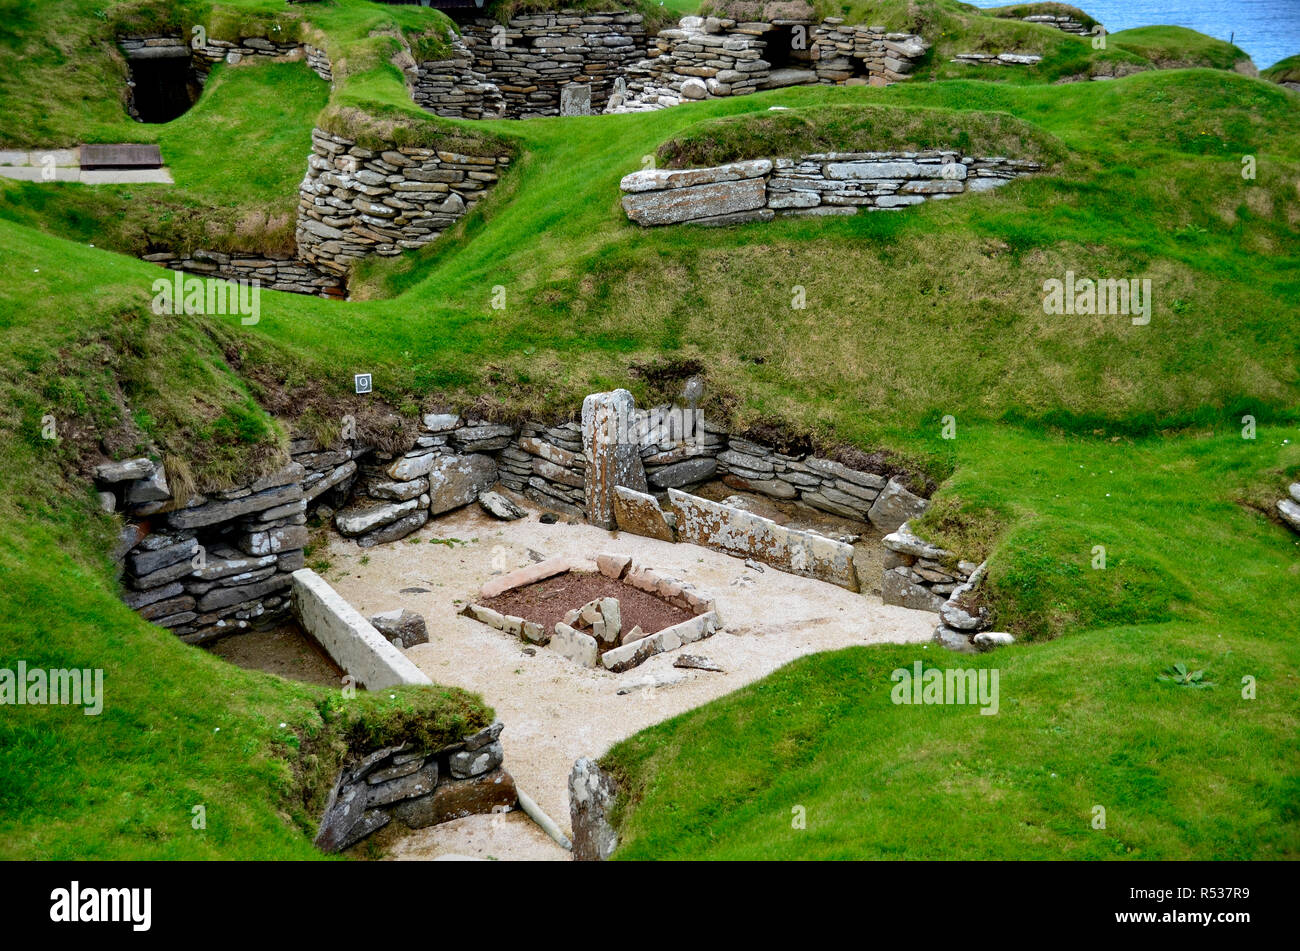 El sitio arqueológico de Skara Brae, una de las más antiguas de la Unesco sitio en el Reino Unido. Islas Orkney Islands Foto de stock